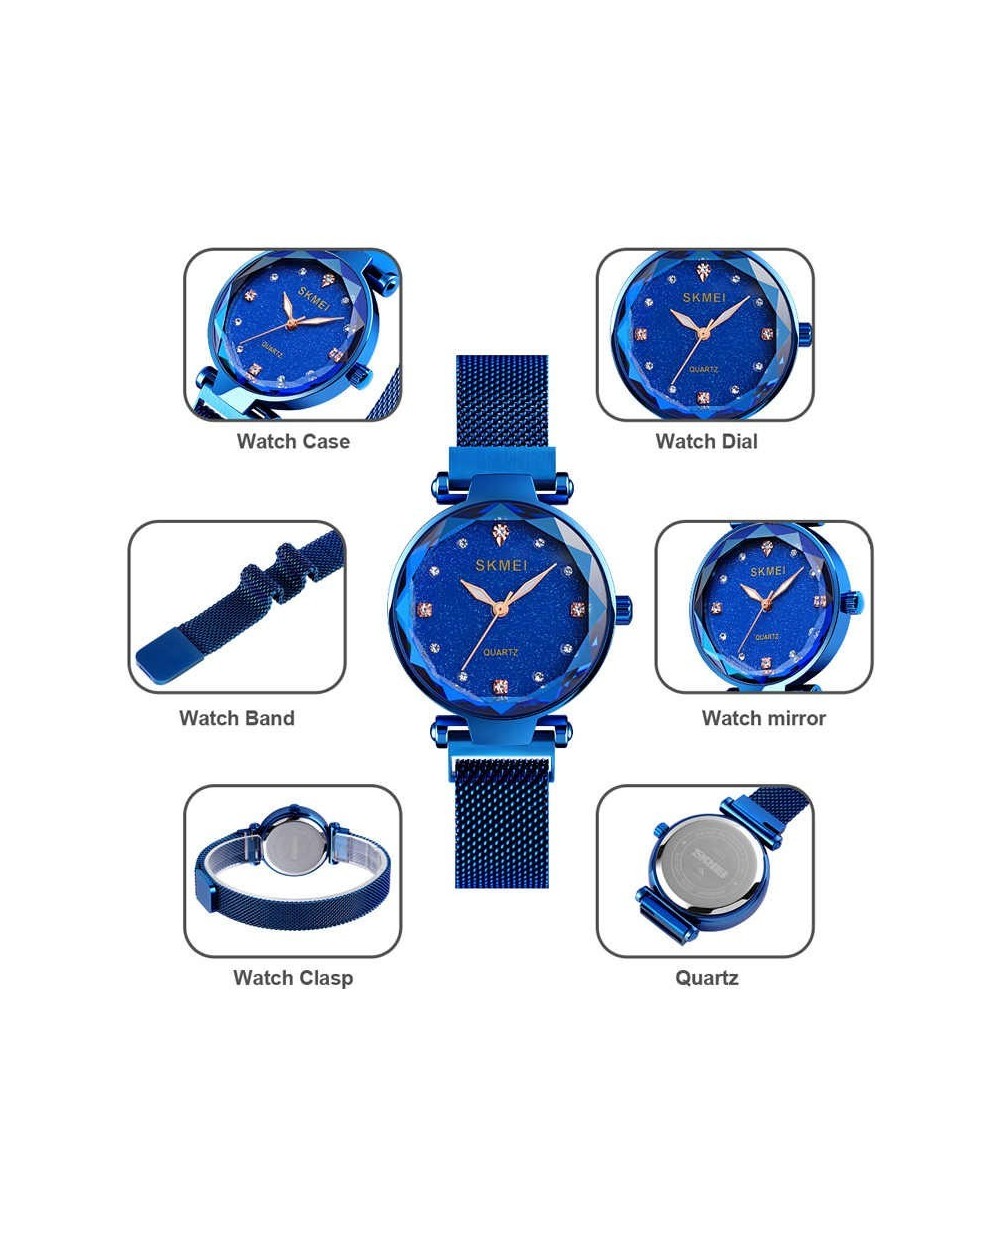 Ρολόι χειρός γυναικείο SKMEI Q022 BLUE